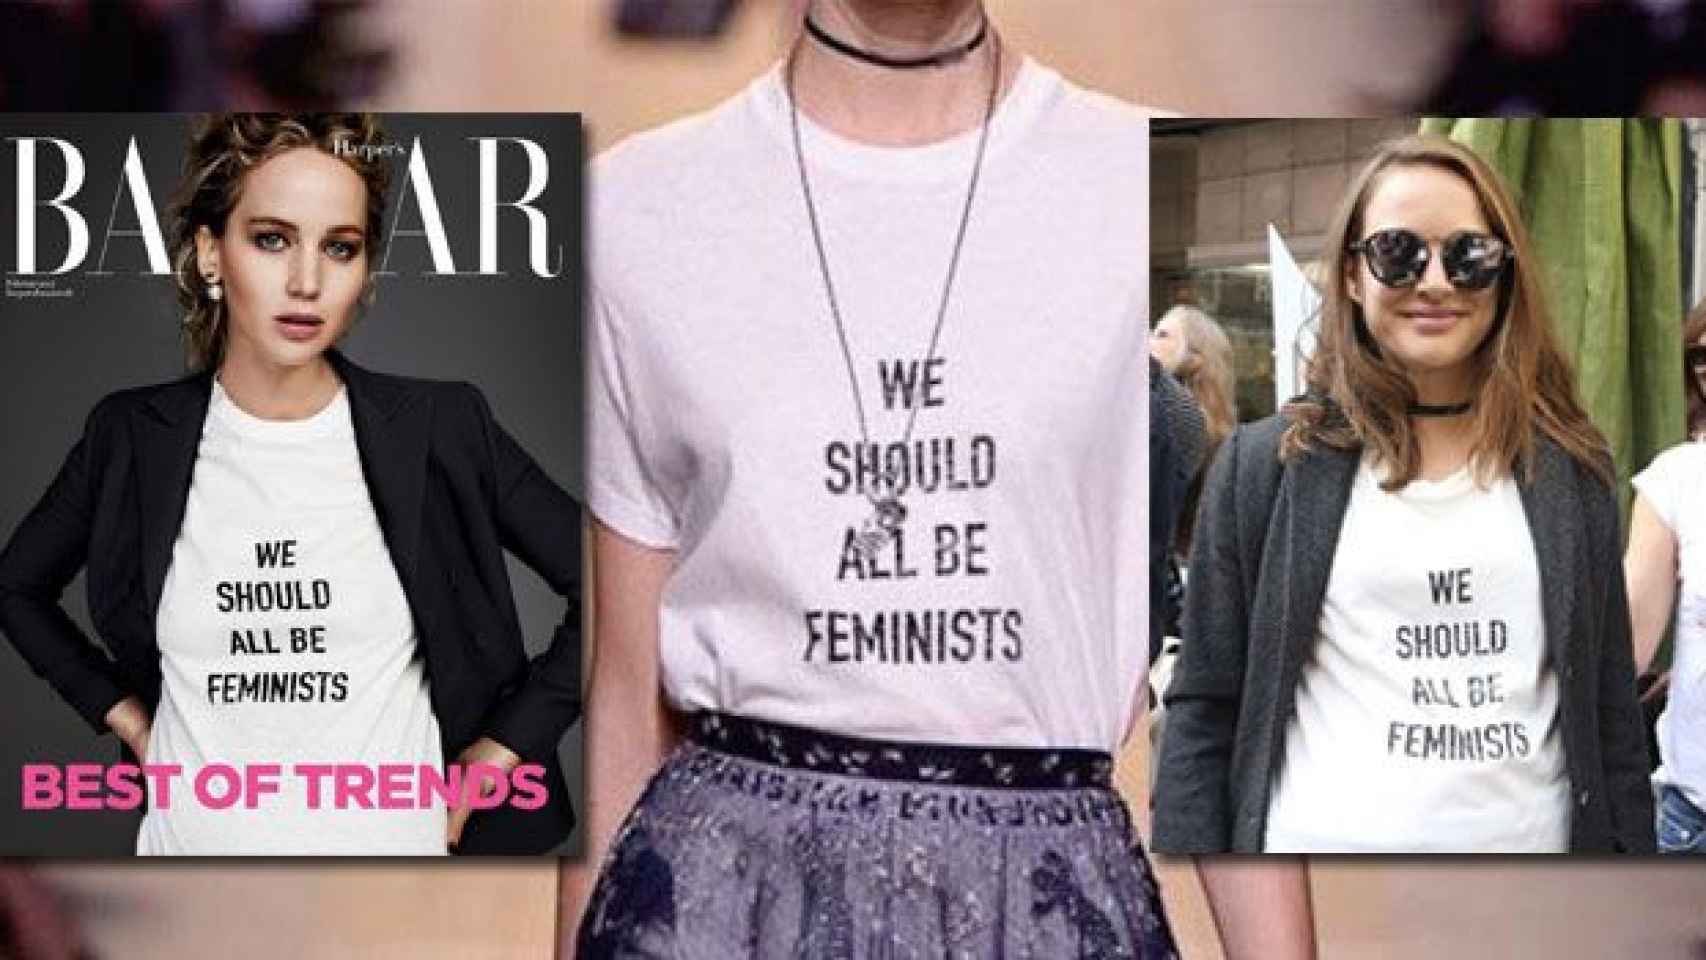 La iconica camiseta feminista de Dior y dos de las famosas que la han lucido, Jennifer Lawrence (i) y Natalie Portman (d) / FOTOMONTAJE DE CG